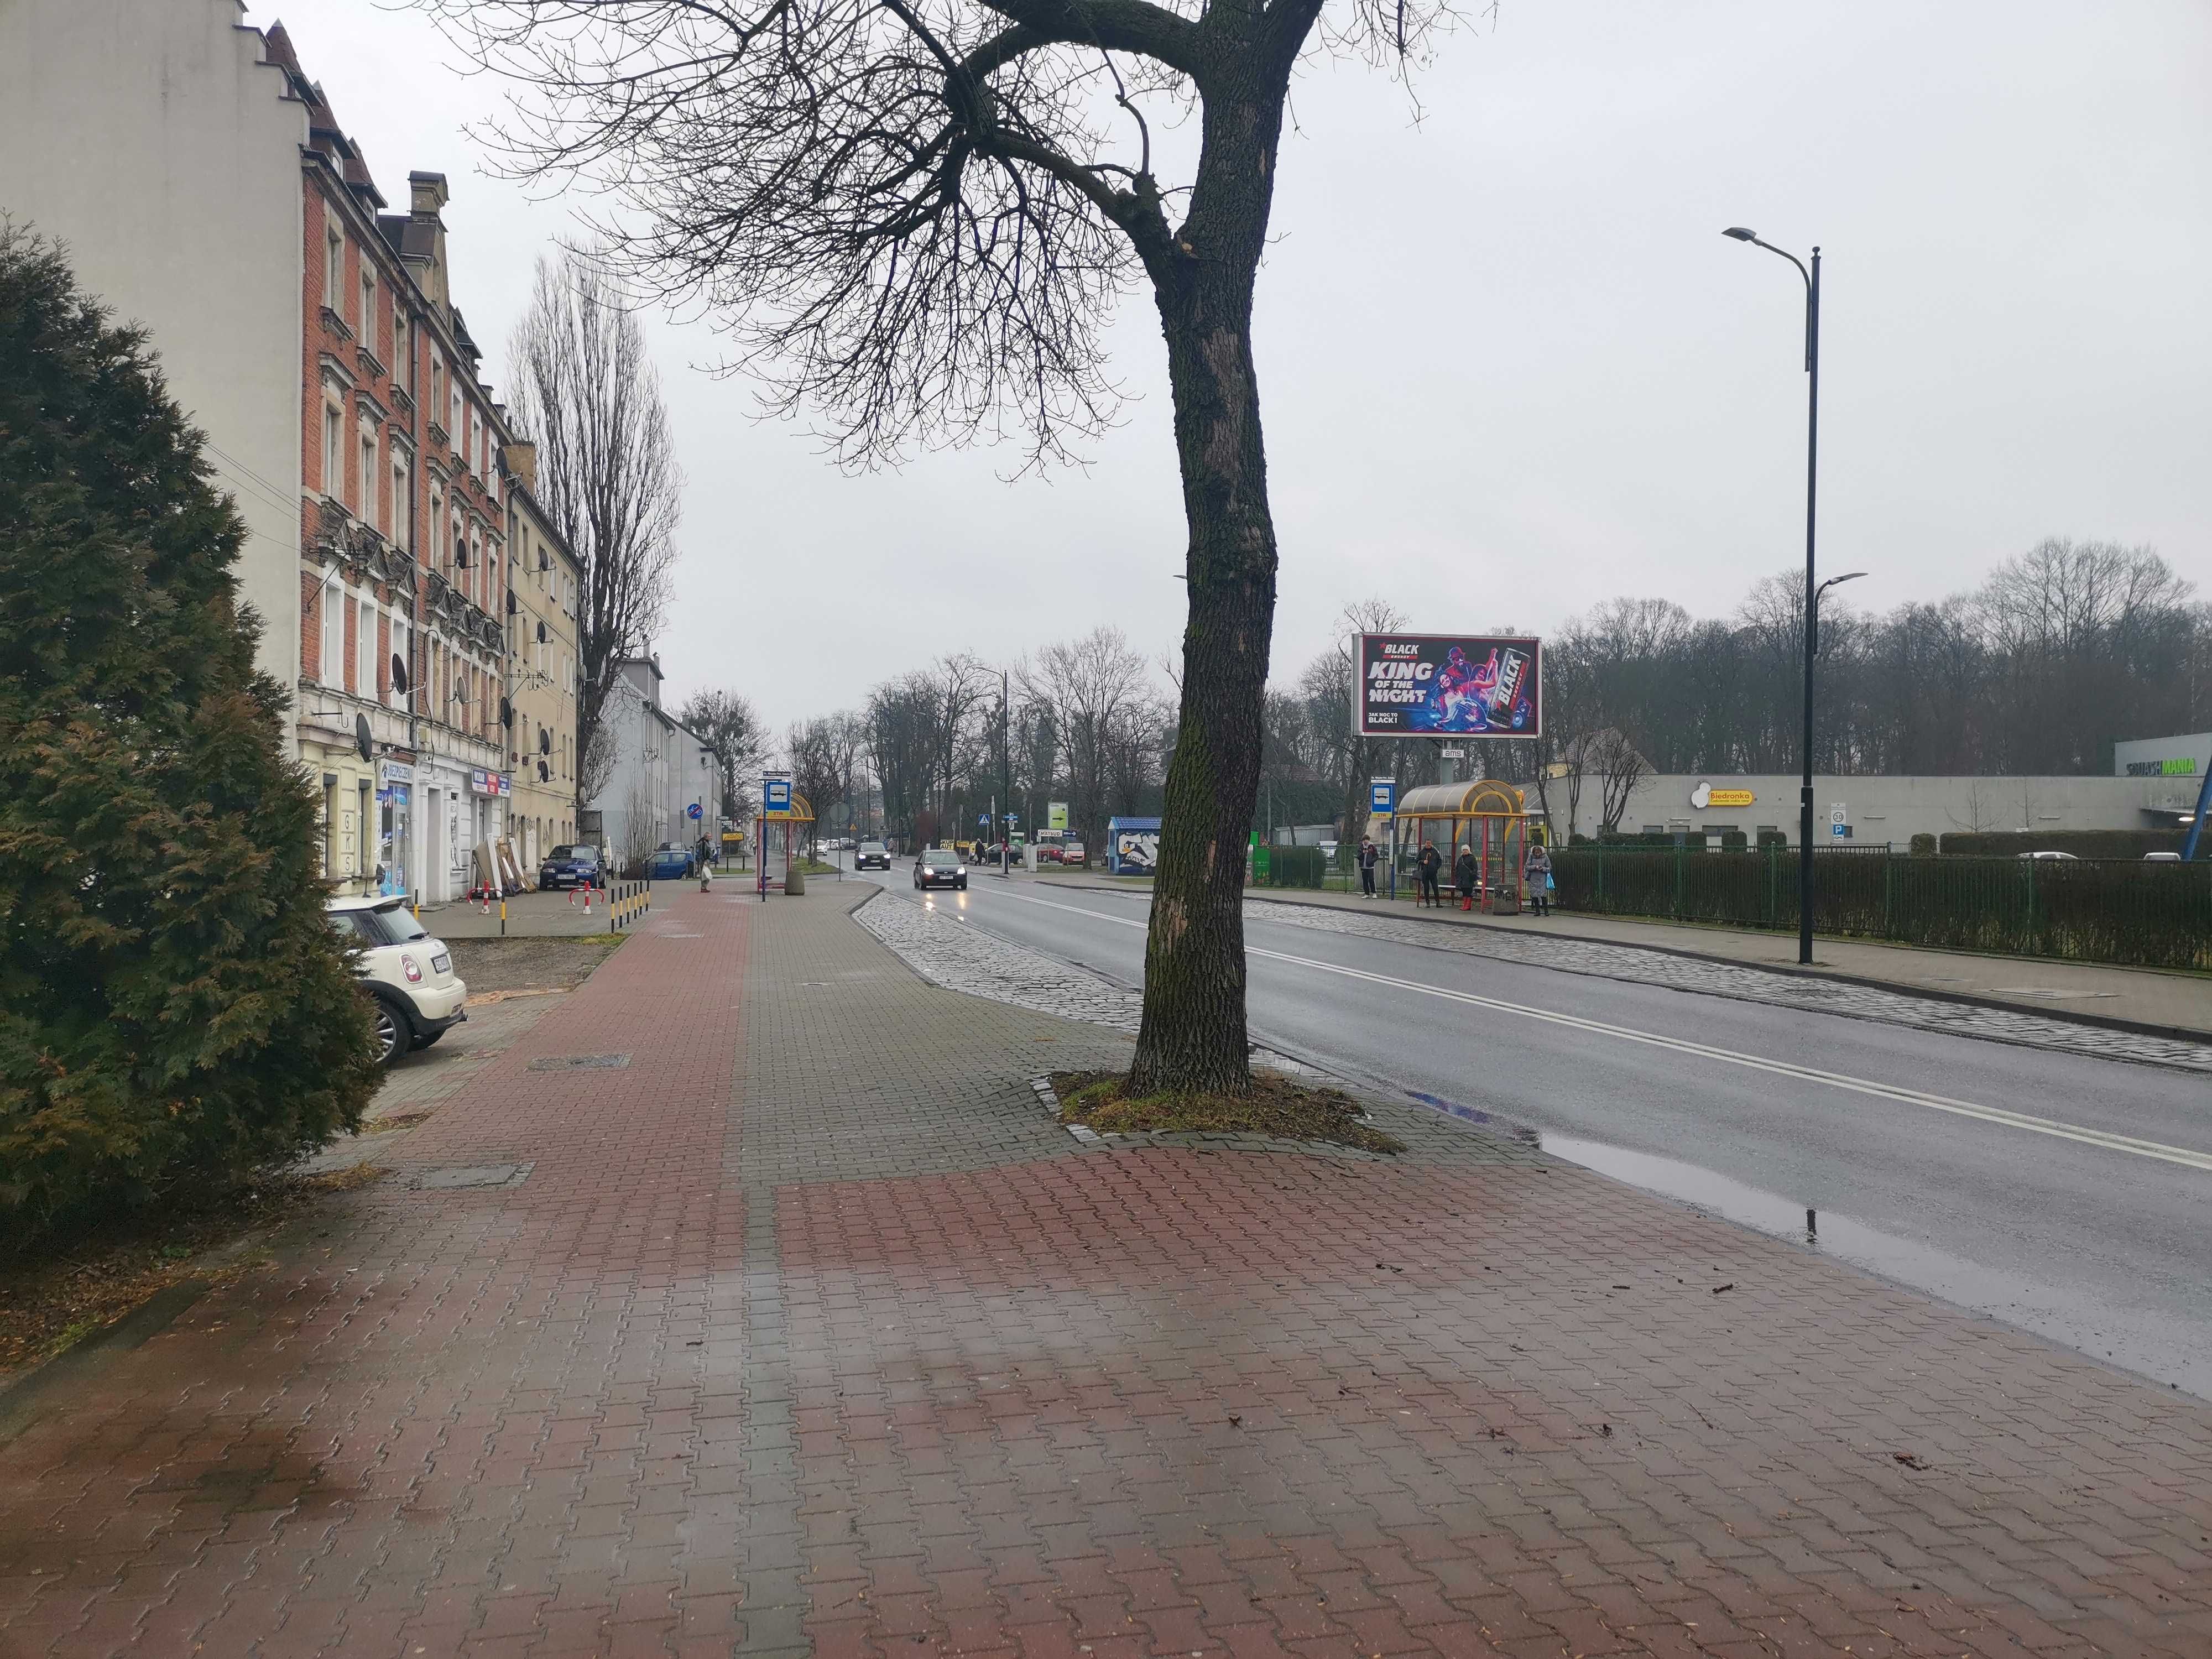 Lokal z działką do wynajęcia, Gliwice ul Kozielska, centrum, parking